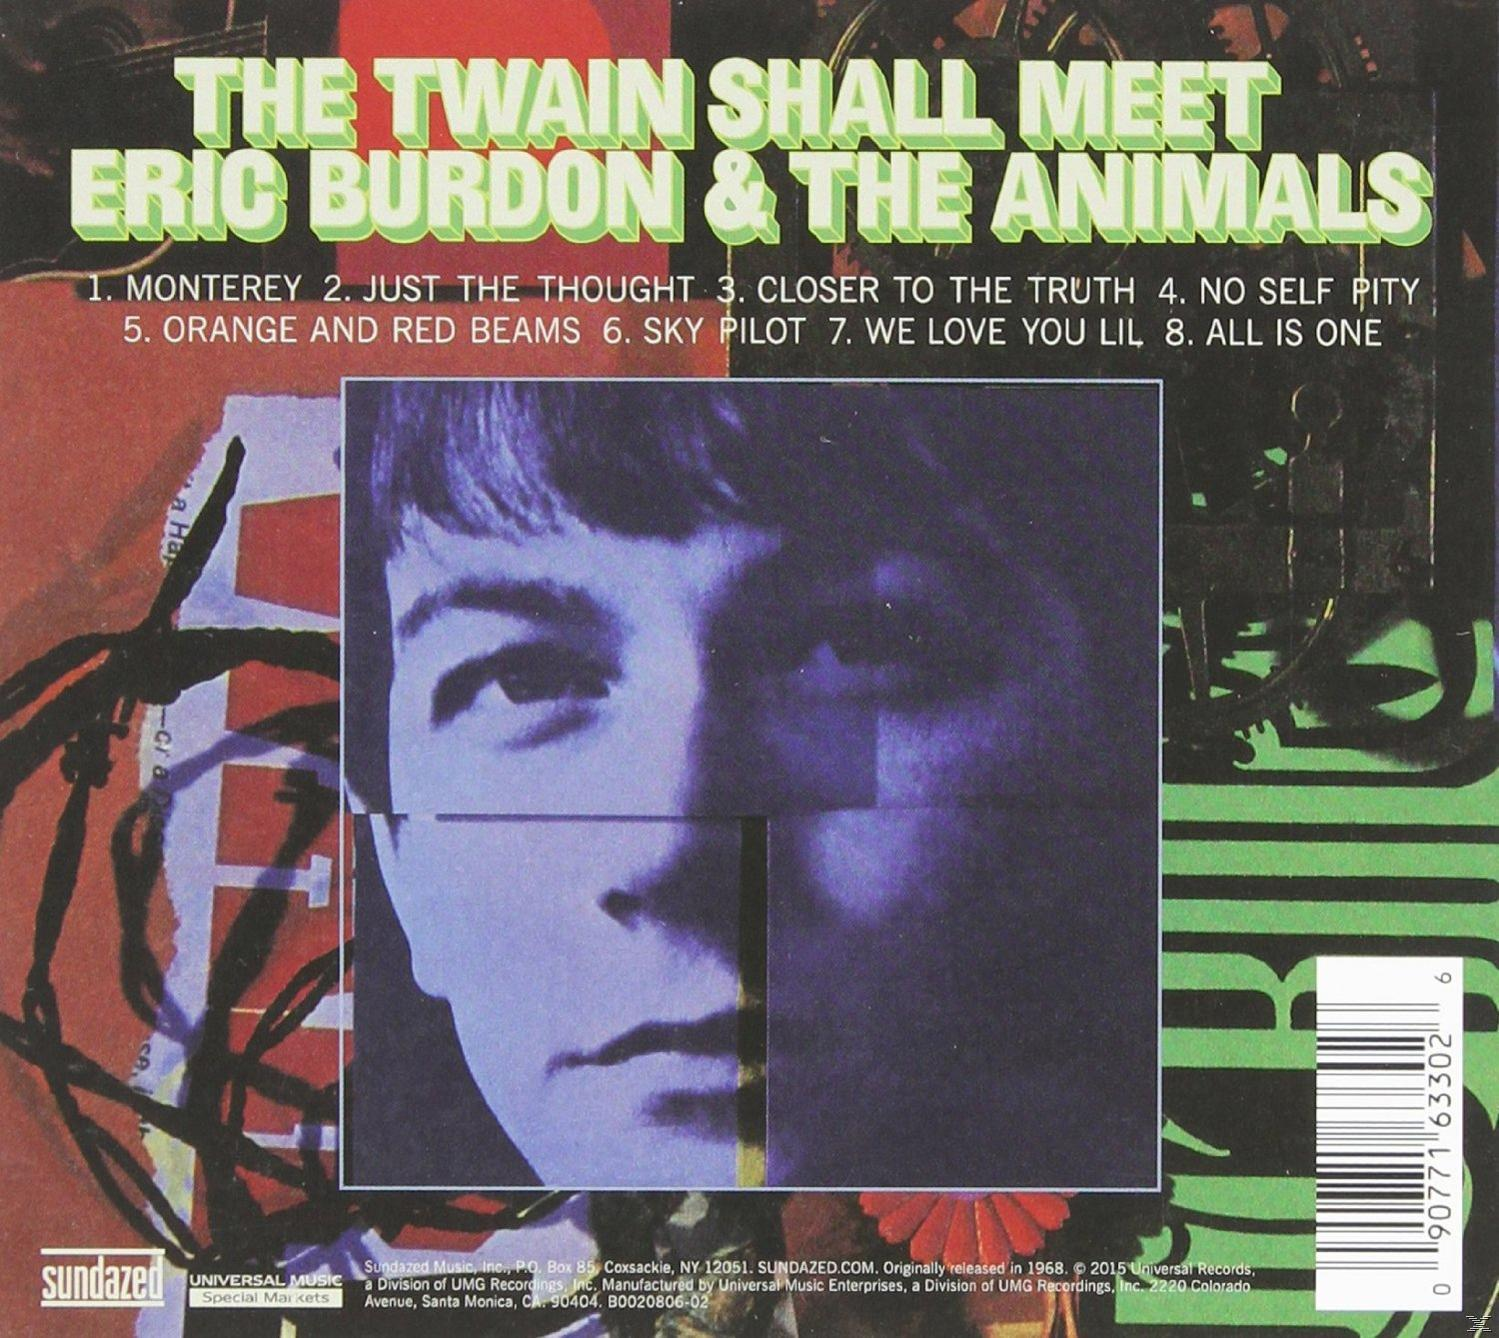 - Shall - Meet-Stereo Edition Eric Twain (CD) Burdon, Animals The The